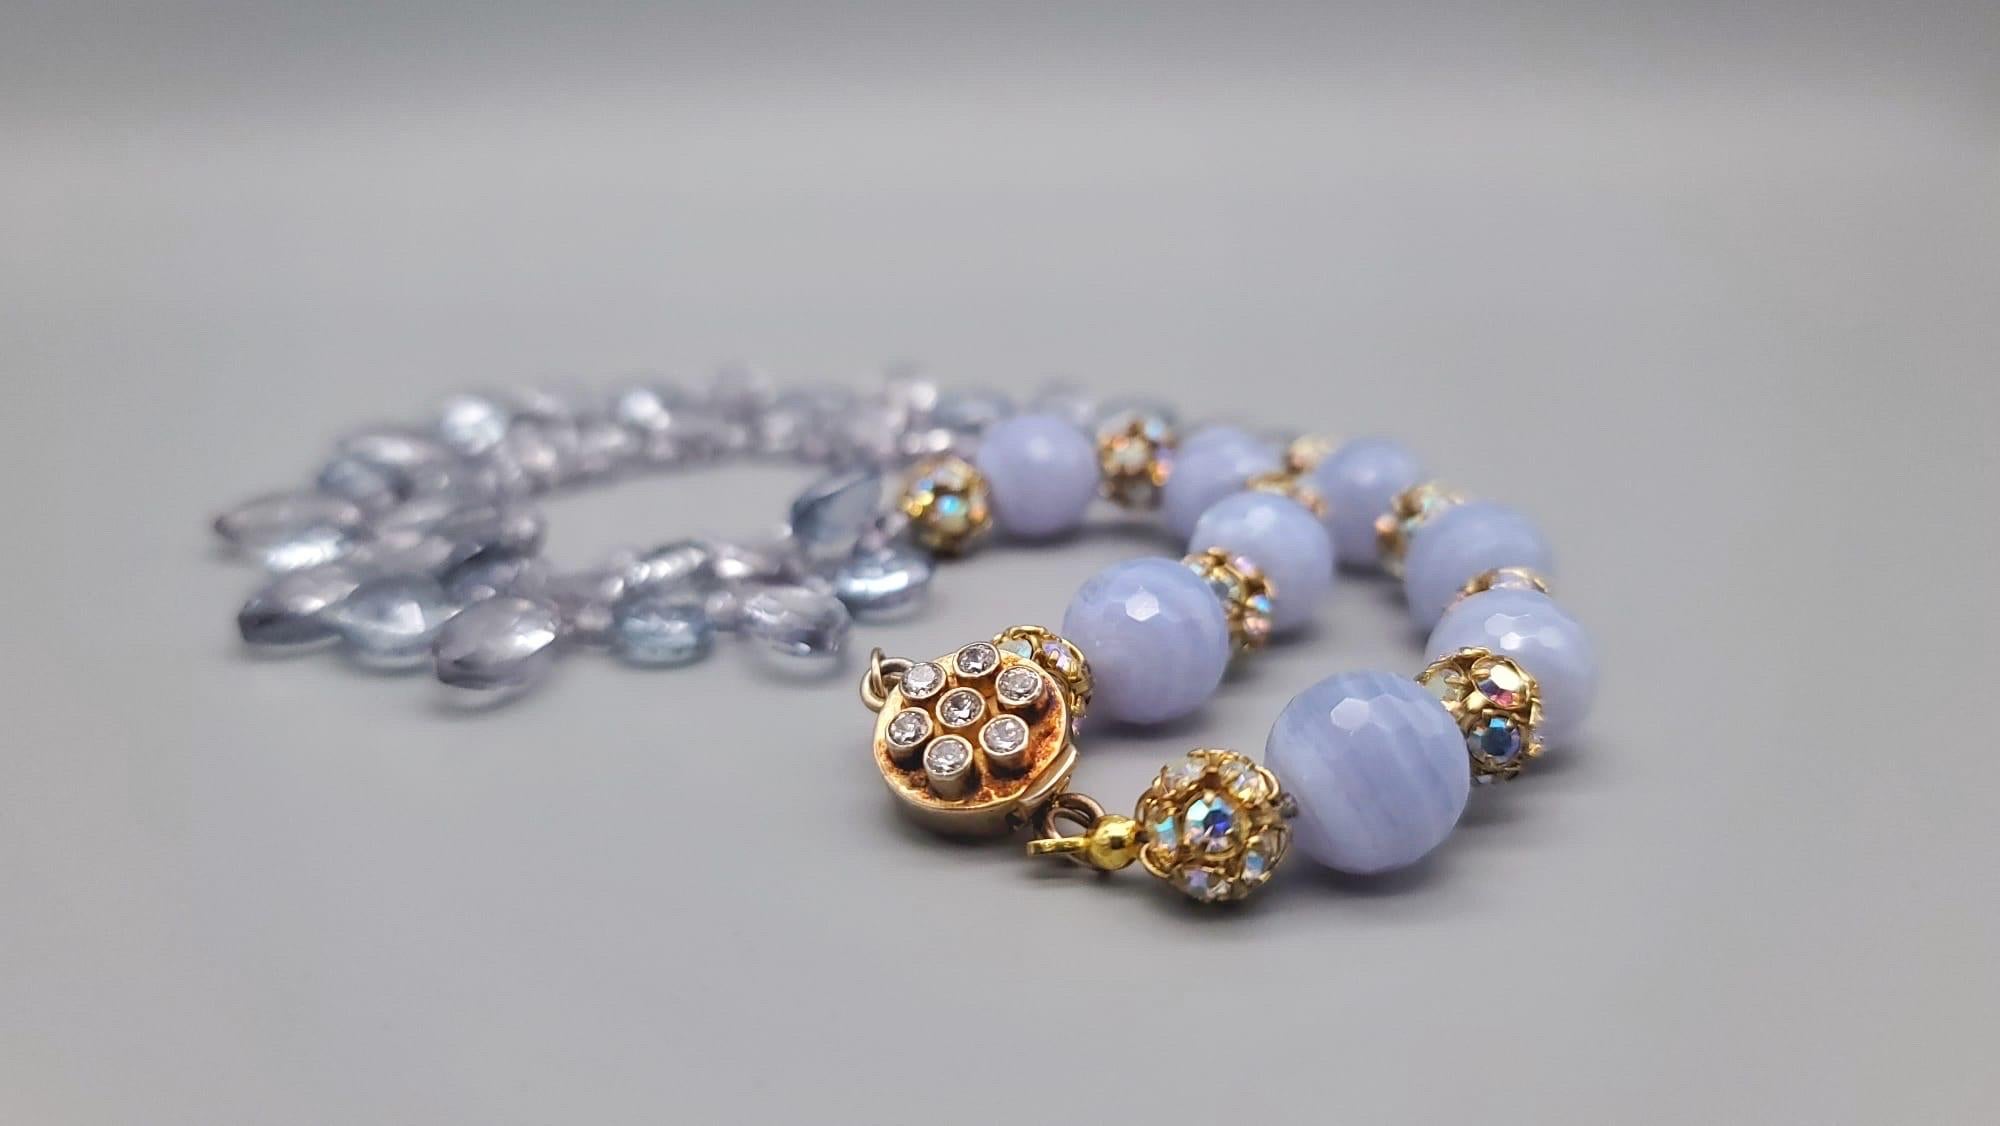 A.Jeschel Blue Quartz and Blue lace Agate Necklace. For Sale 4